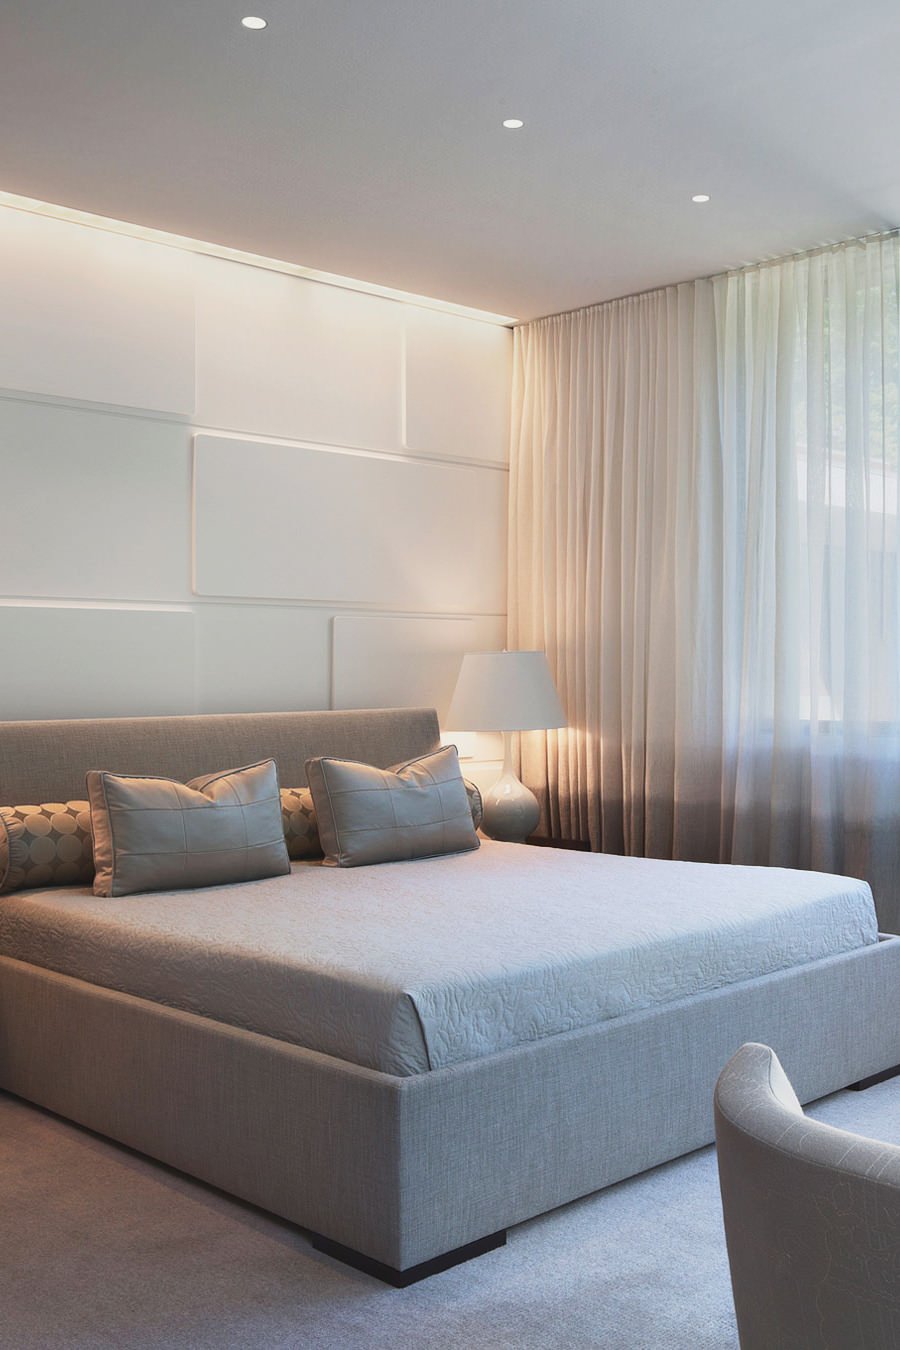 Camera da letto moderna con pareti  rivestiti con pannelli in laminato 3d. La luce diretta dal soffitto crea un originale effetto.